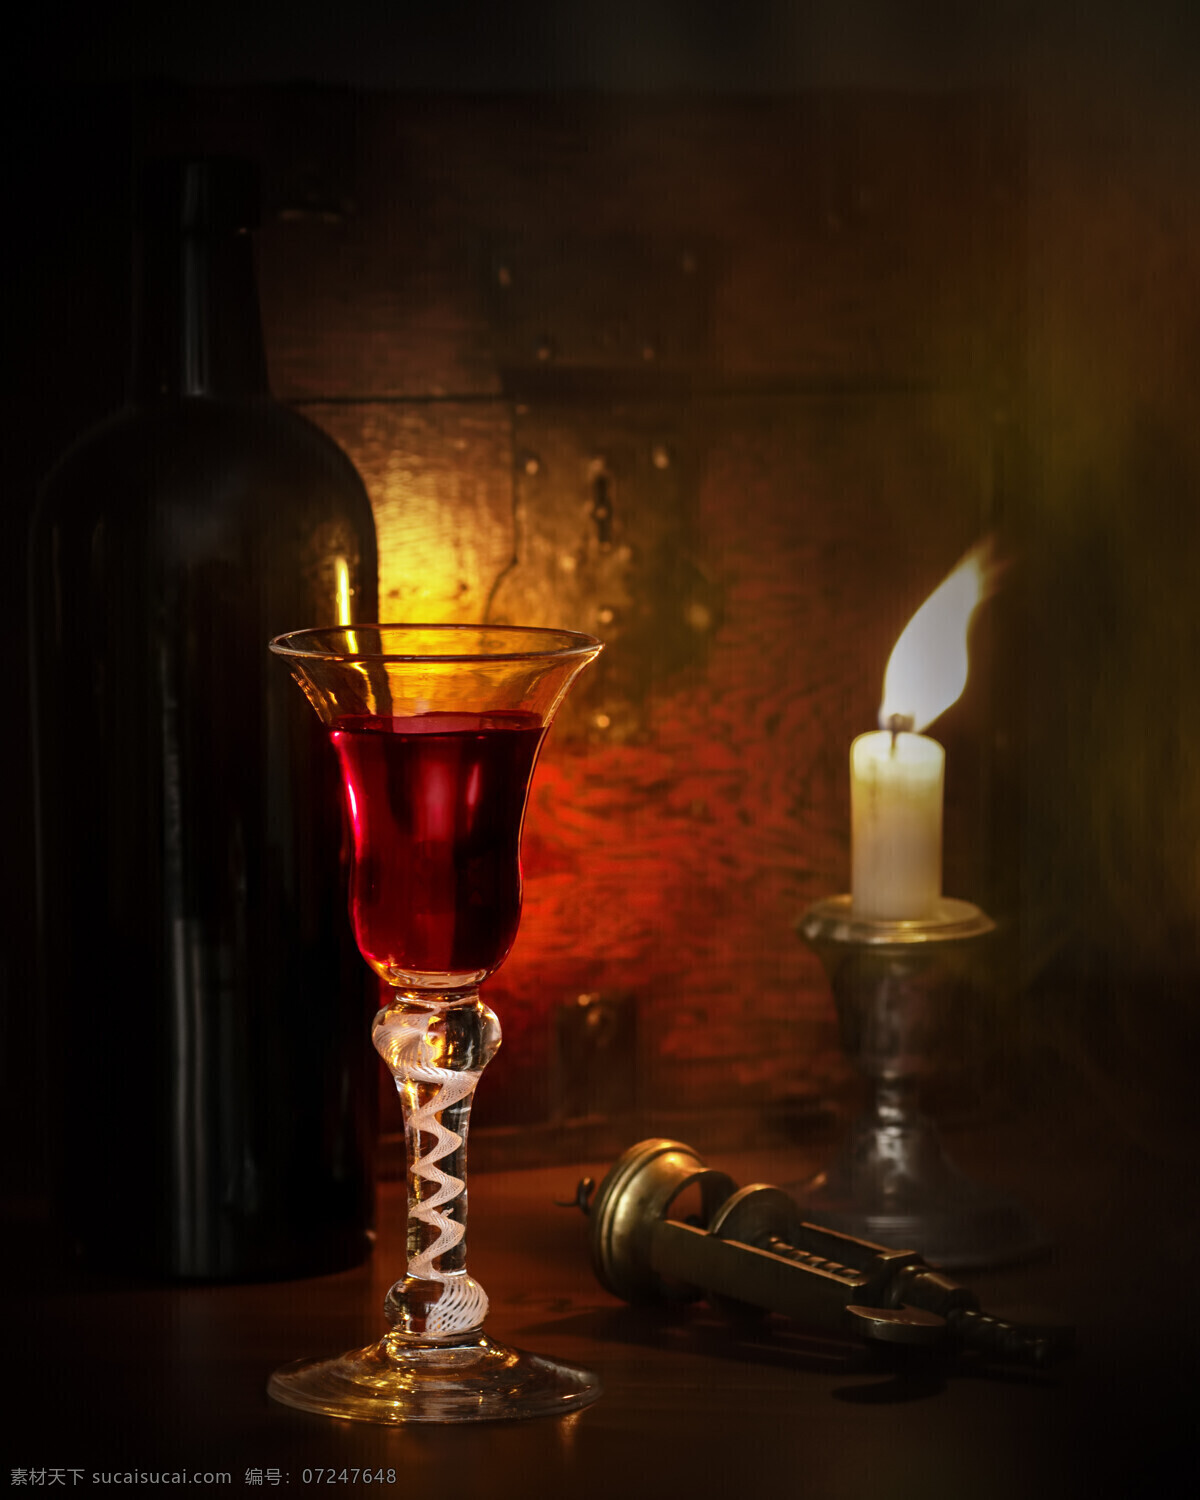 酒杯 蜡烛 红酒 开瓶器 酒水 酒类图片 餐饮美食